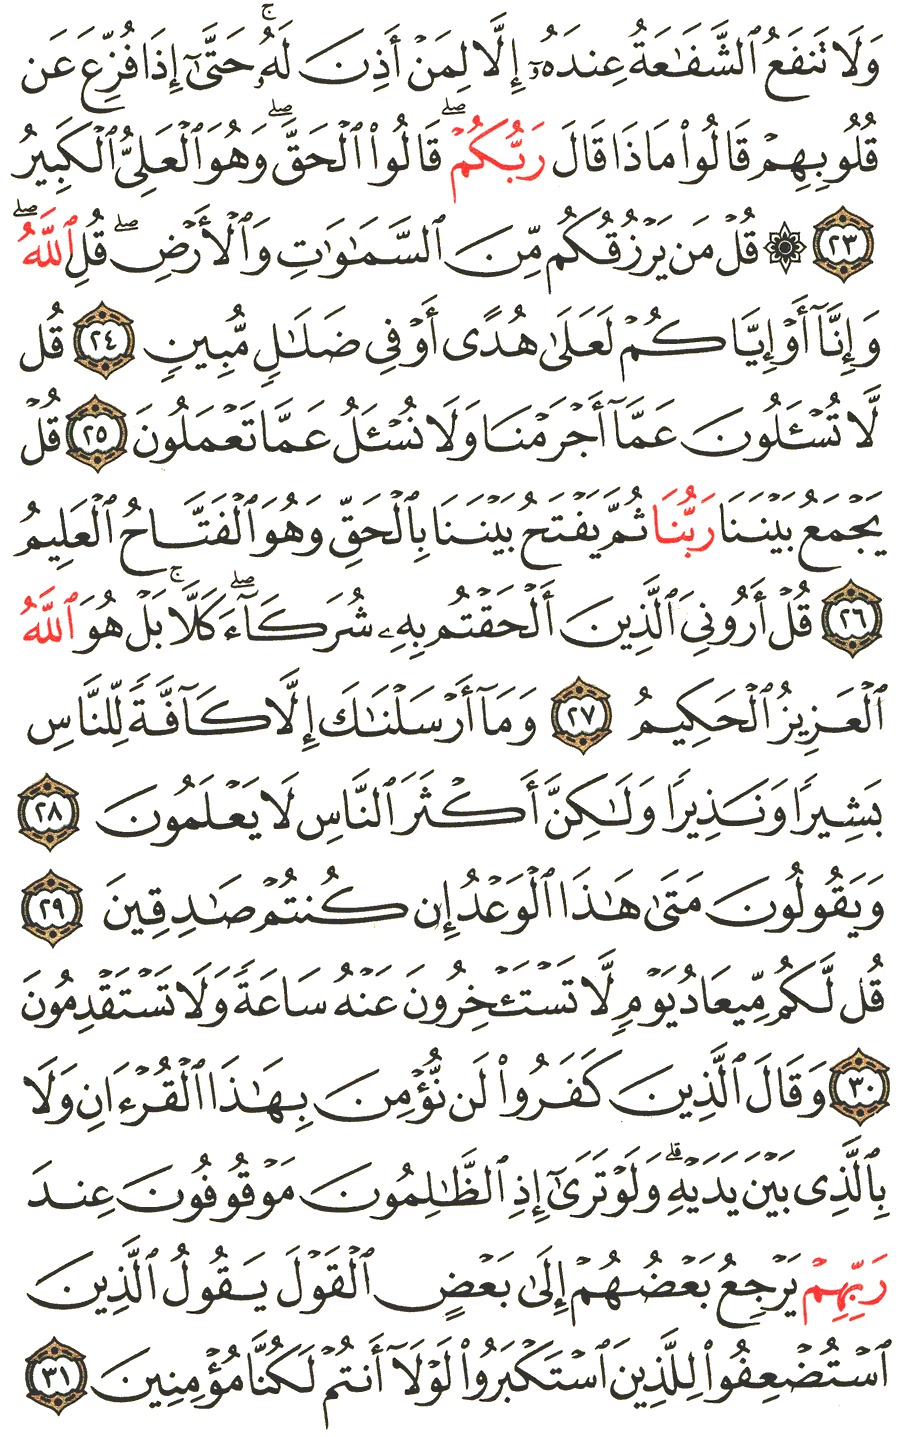 الصفحة 431 من القرآن الكريم